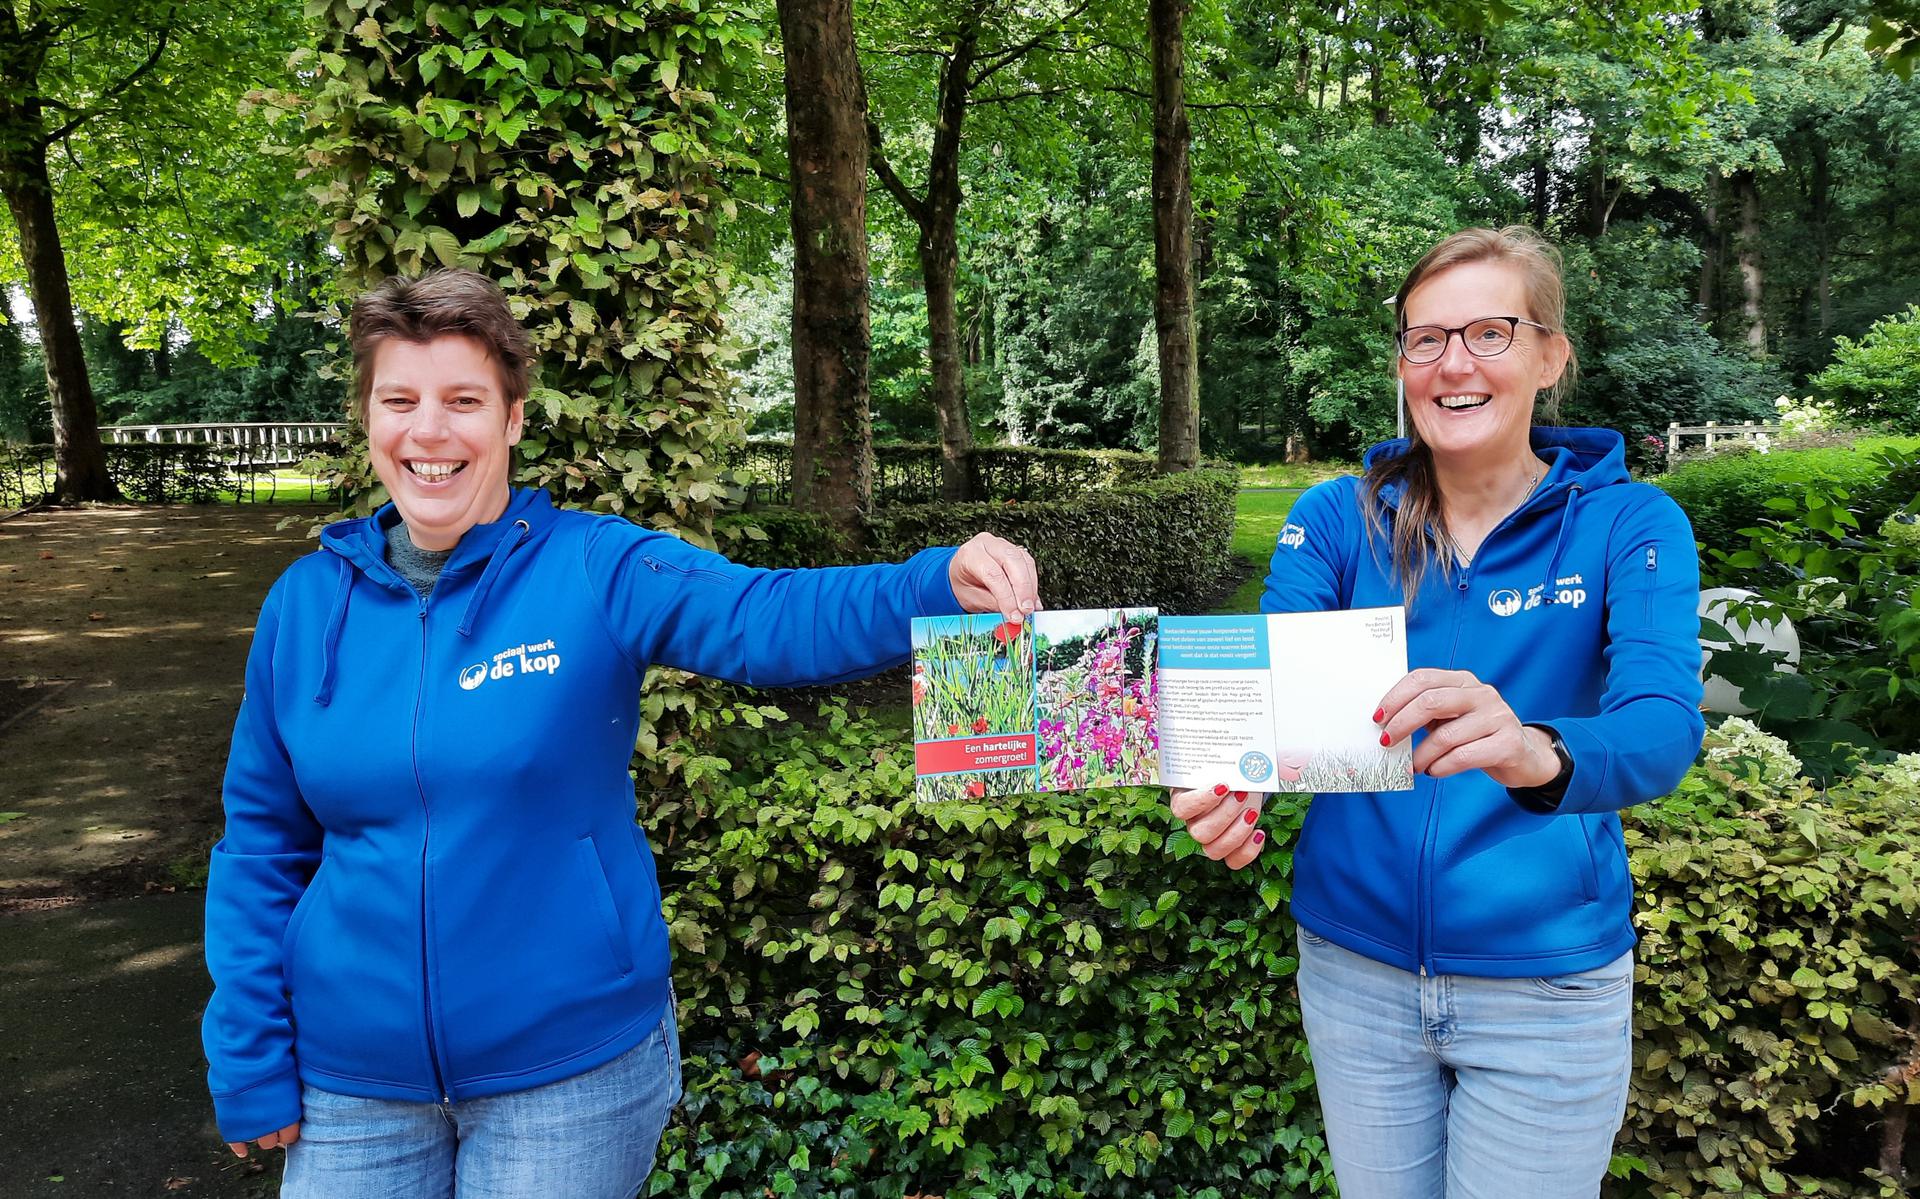 Sandra Ordelman en Paula Bierma van Sociaal Werk De Kop met de zomeransichtkaart.